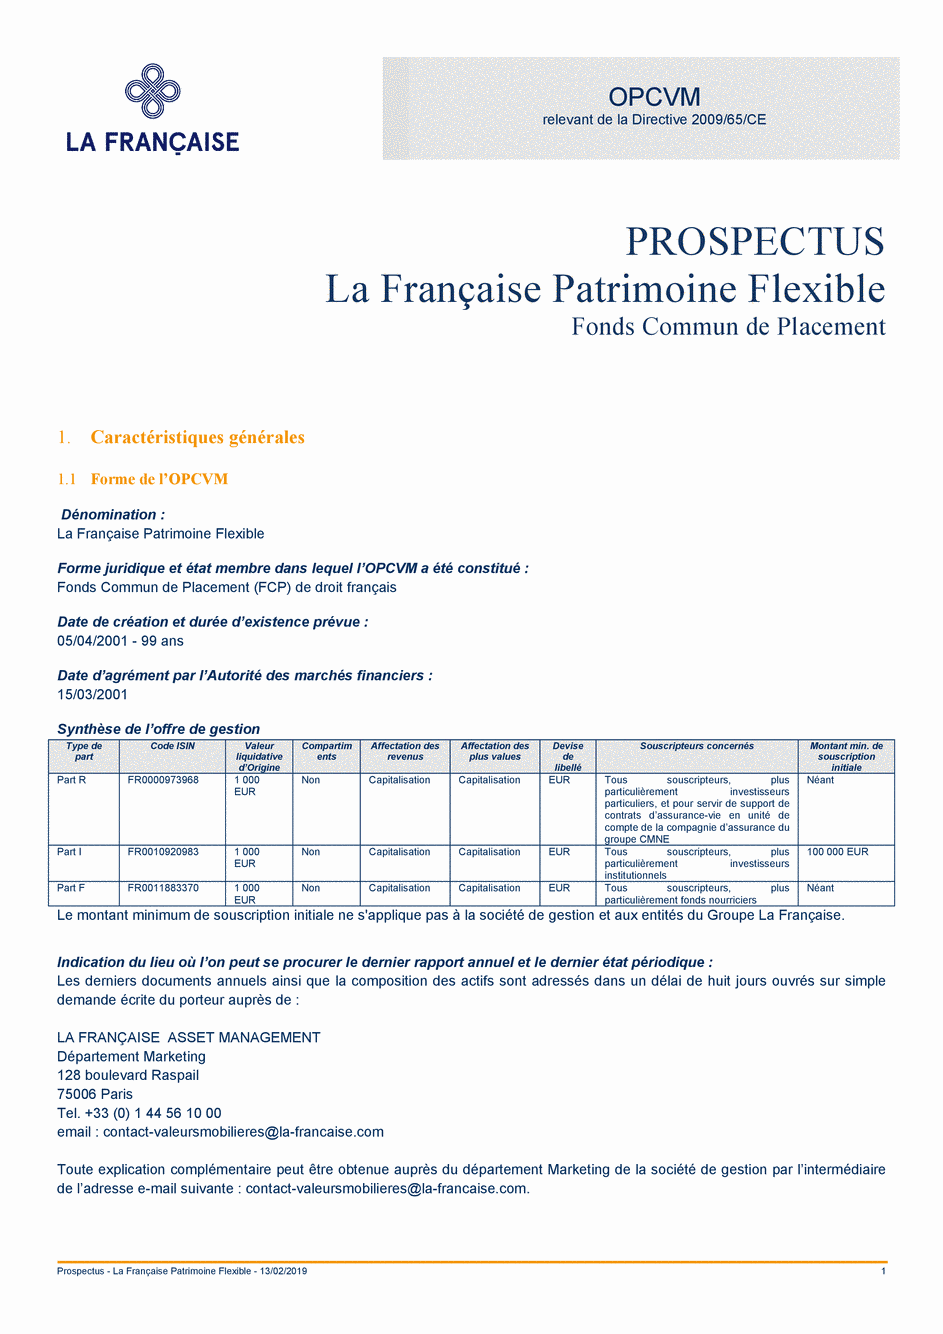 Prospectus La Française Patrimoine Flexible - Part I - 13/02/2019 - Français